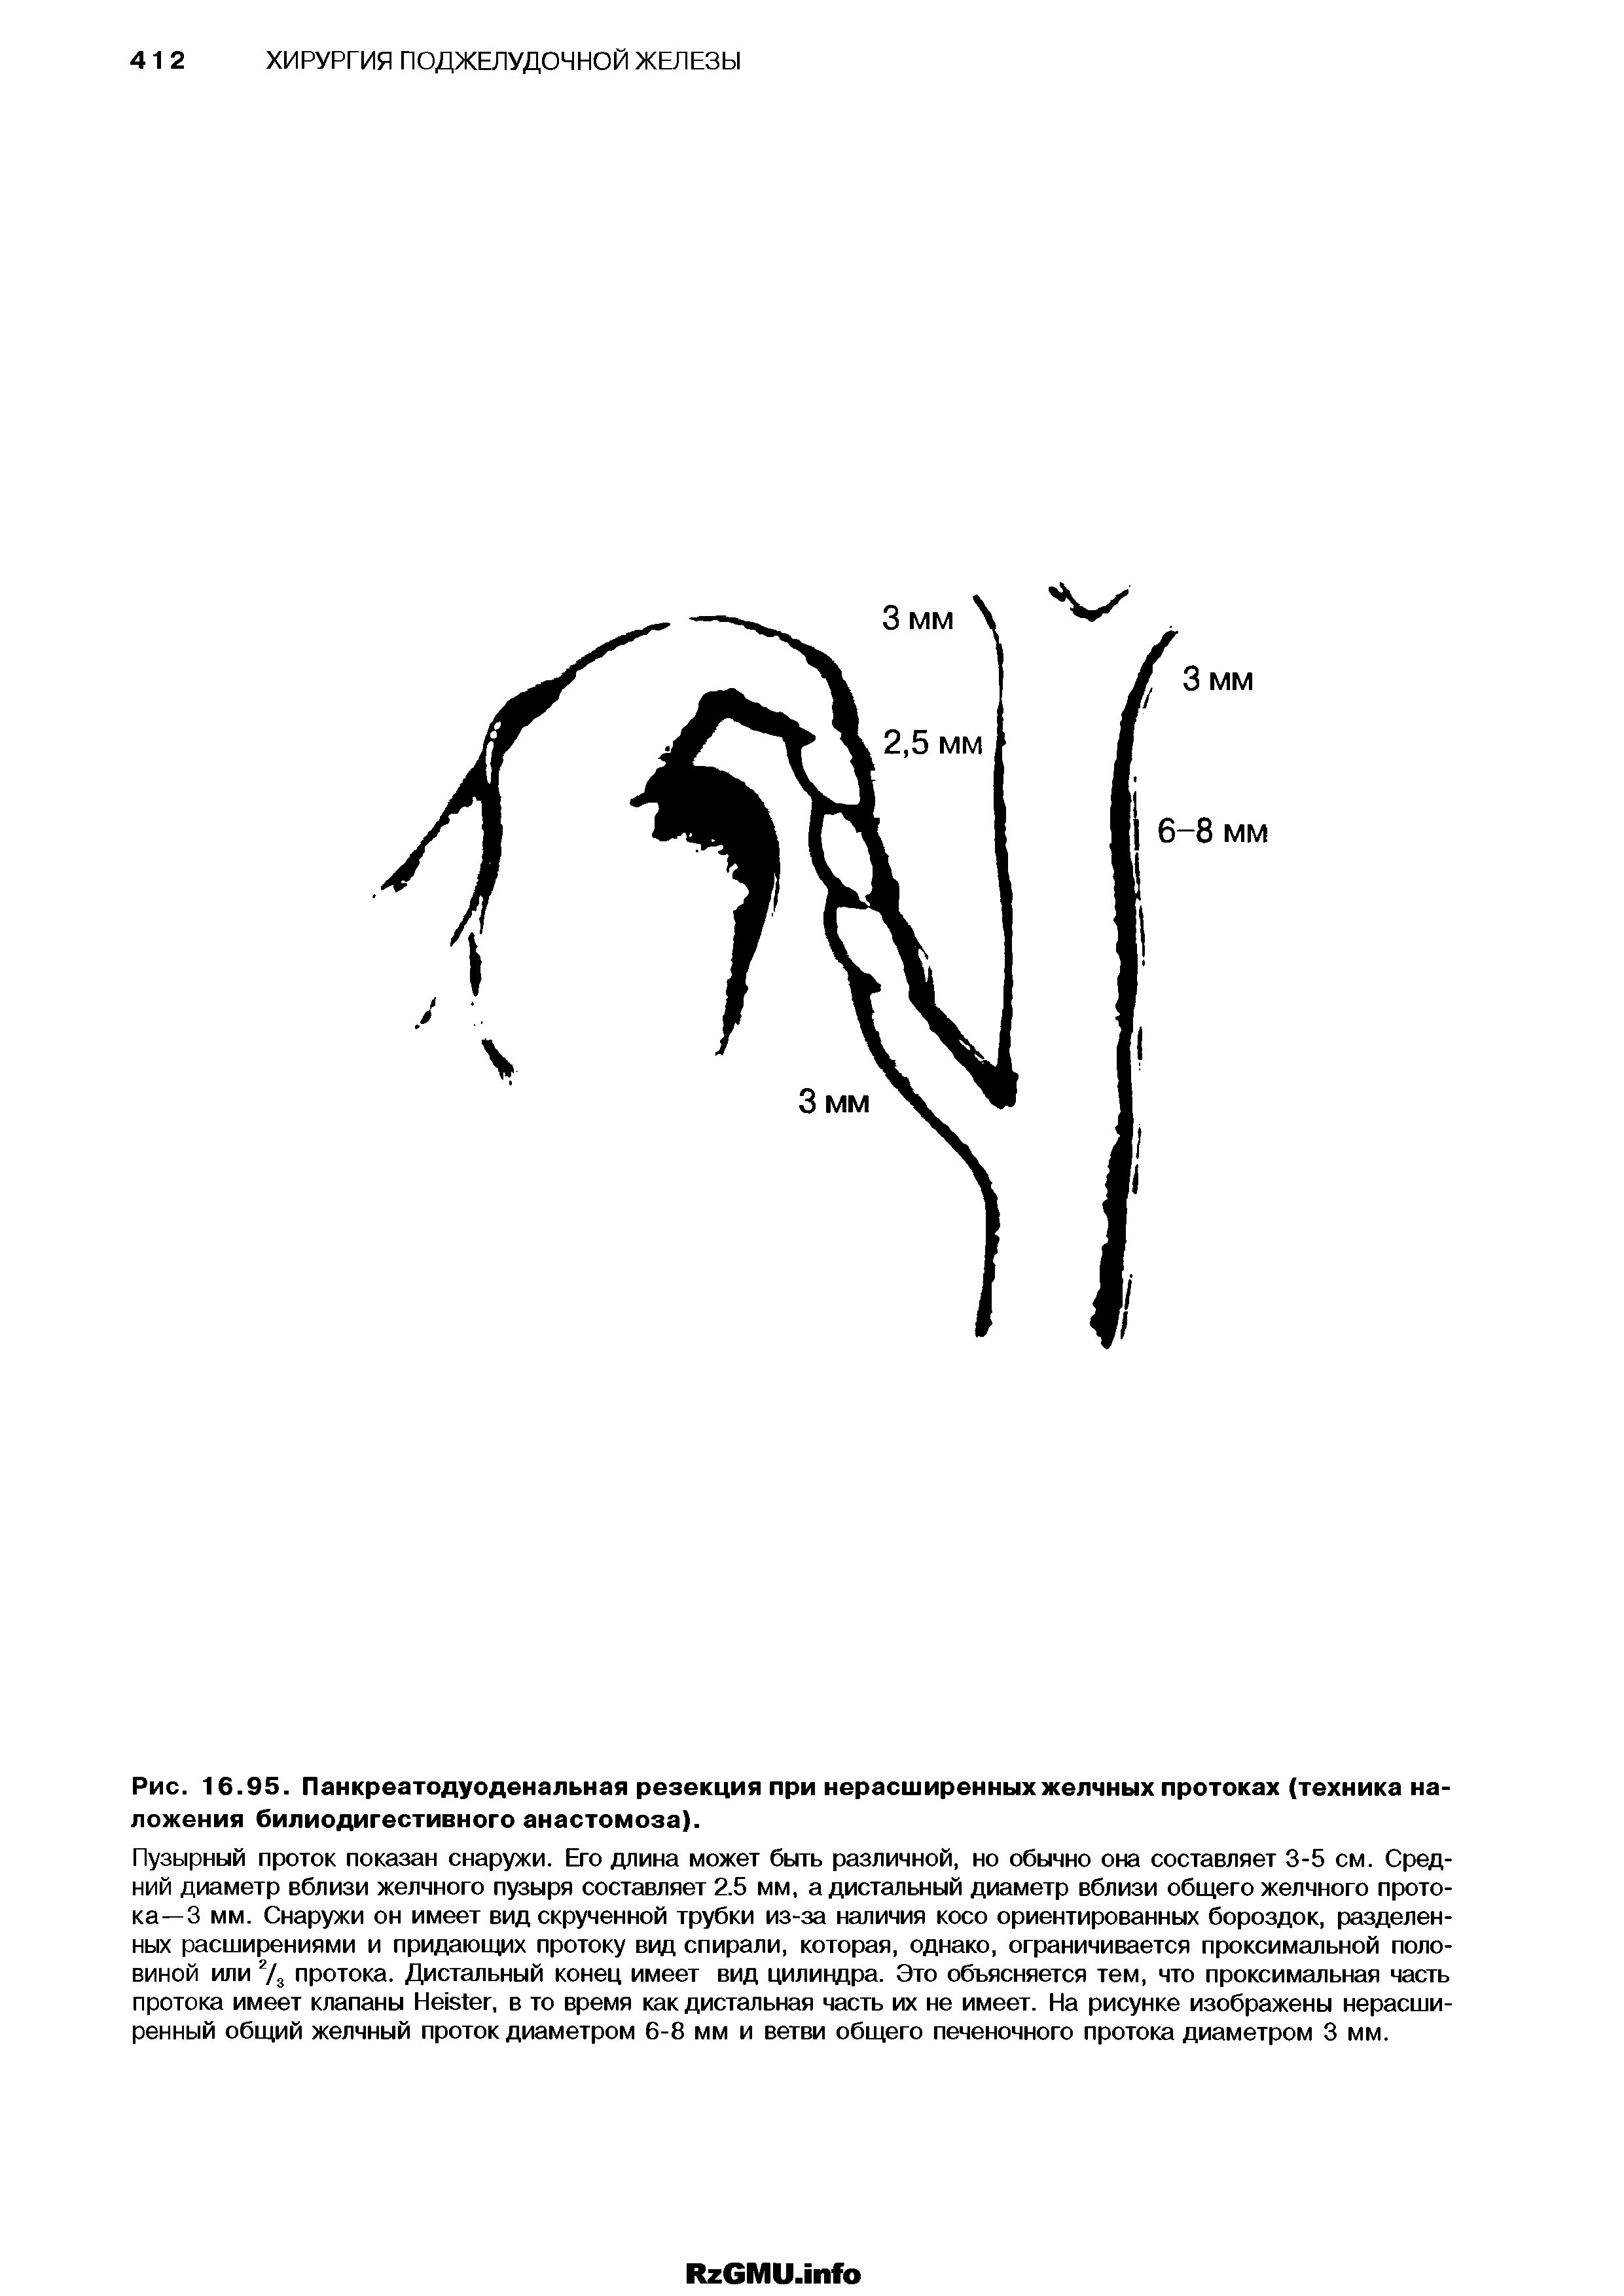 Рис. 16.95. Панкреатодуоденальная резекция при нерасширенных желчных протоках (техника наложения билиодигестивного анастомоза).